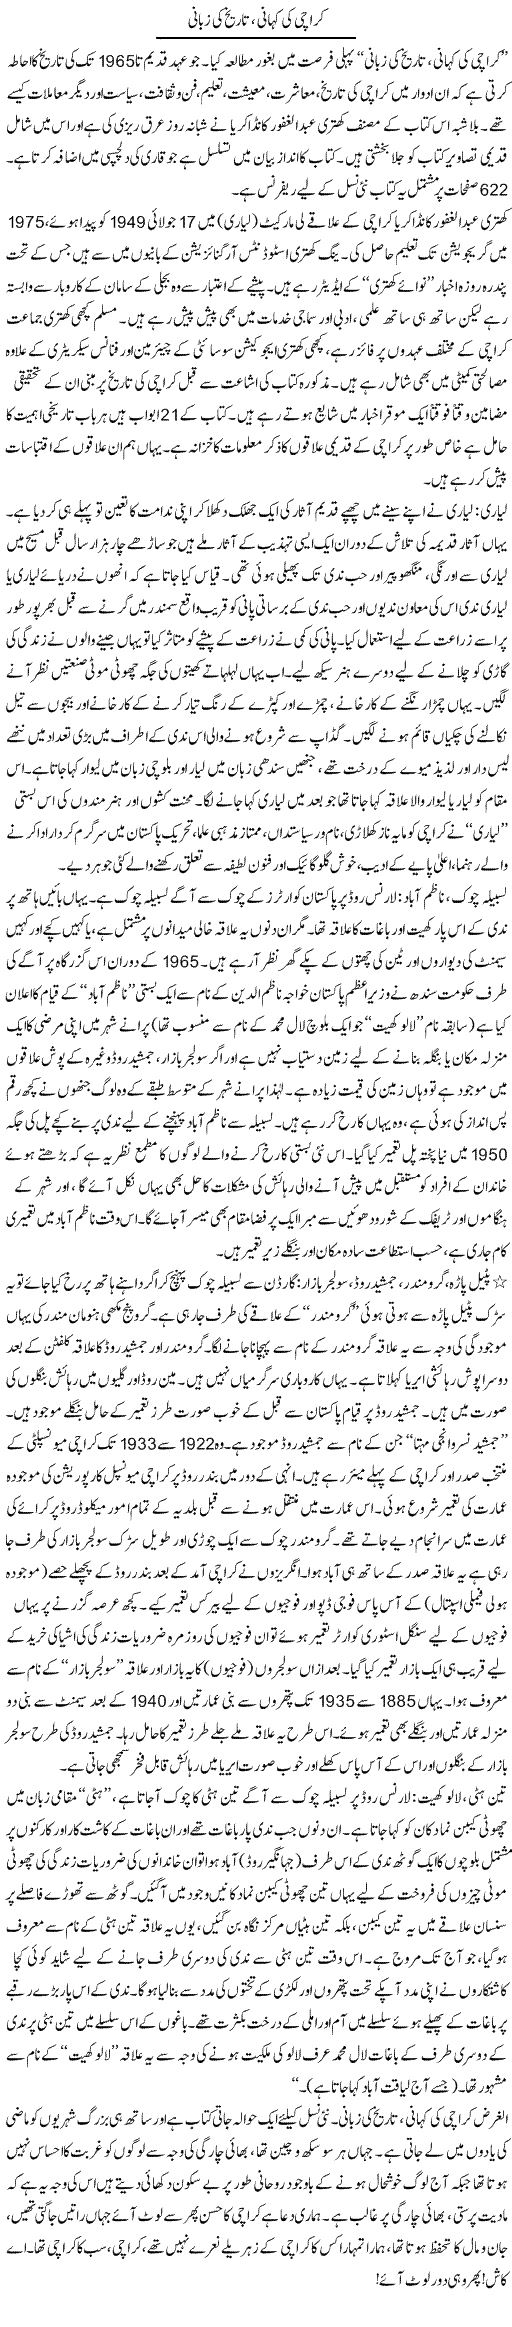 Karachi ki kahani, tareekh ki zubani | Shabbir Arman | Daily Urdu Columns